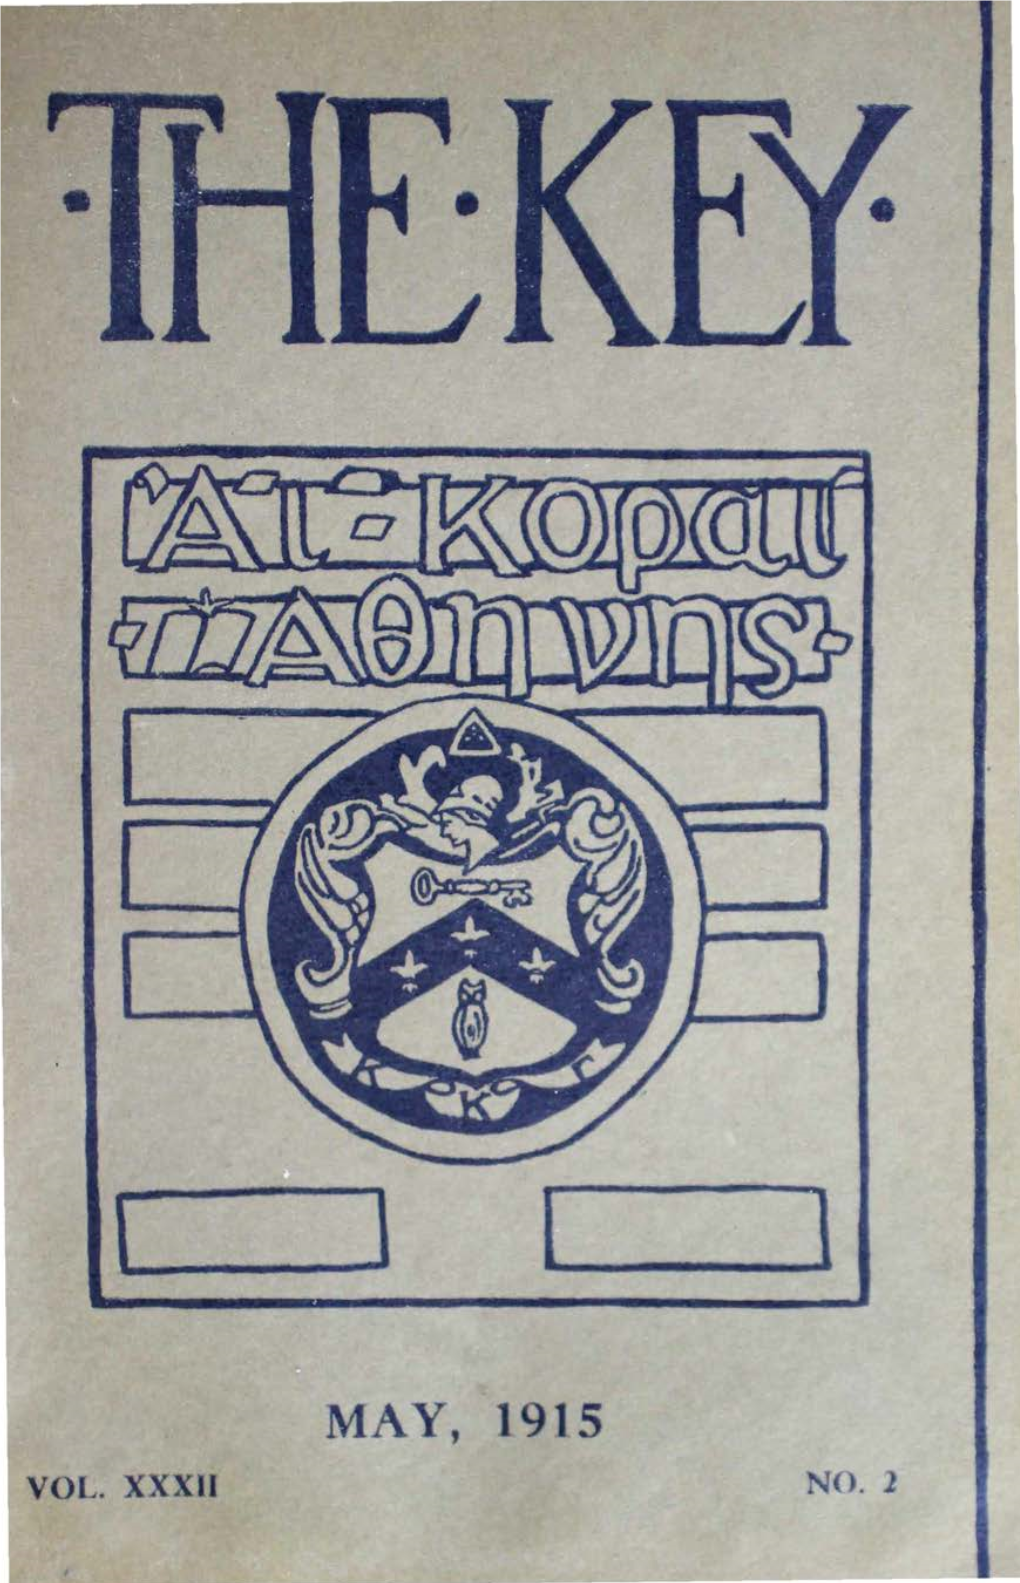 May, 1915 Vol